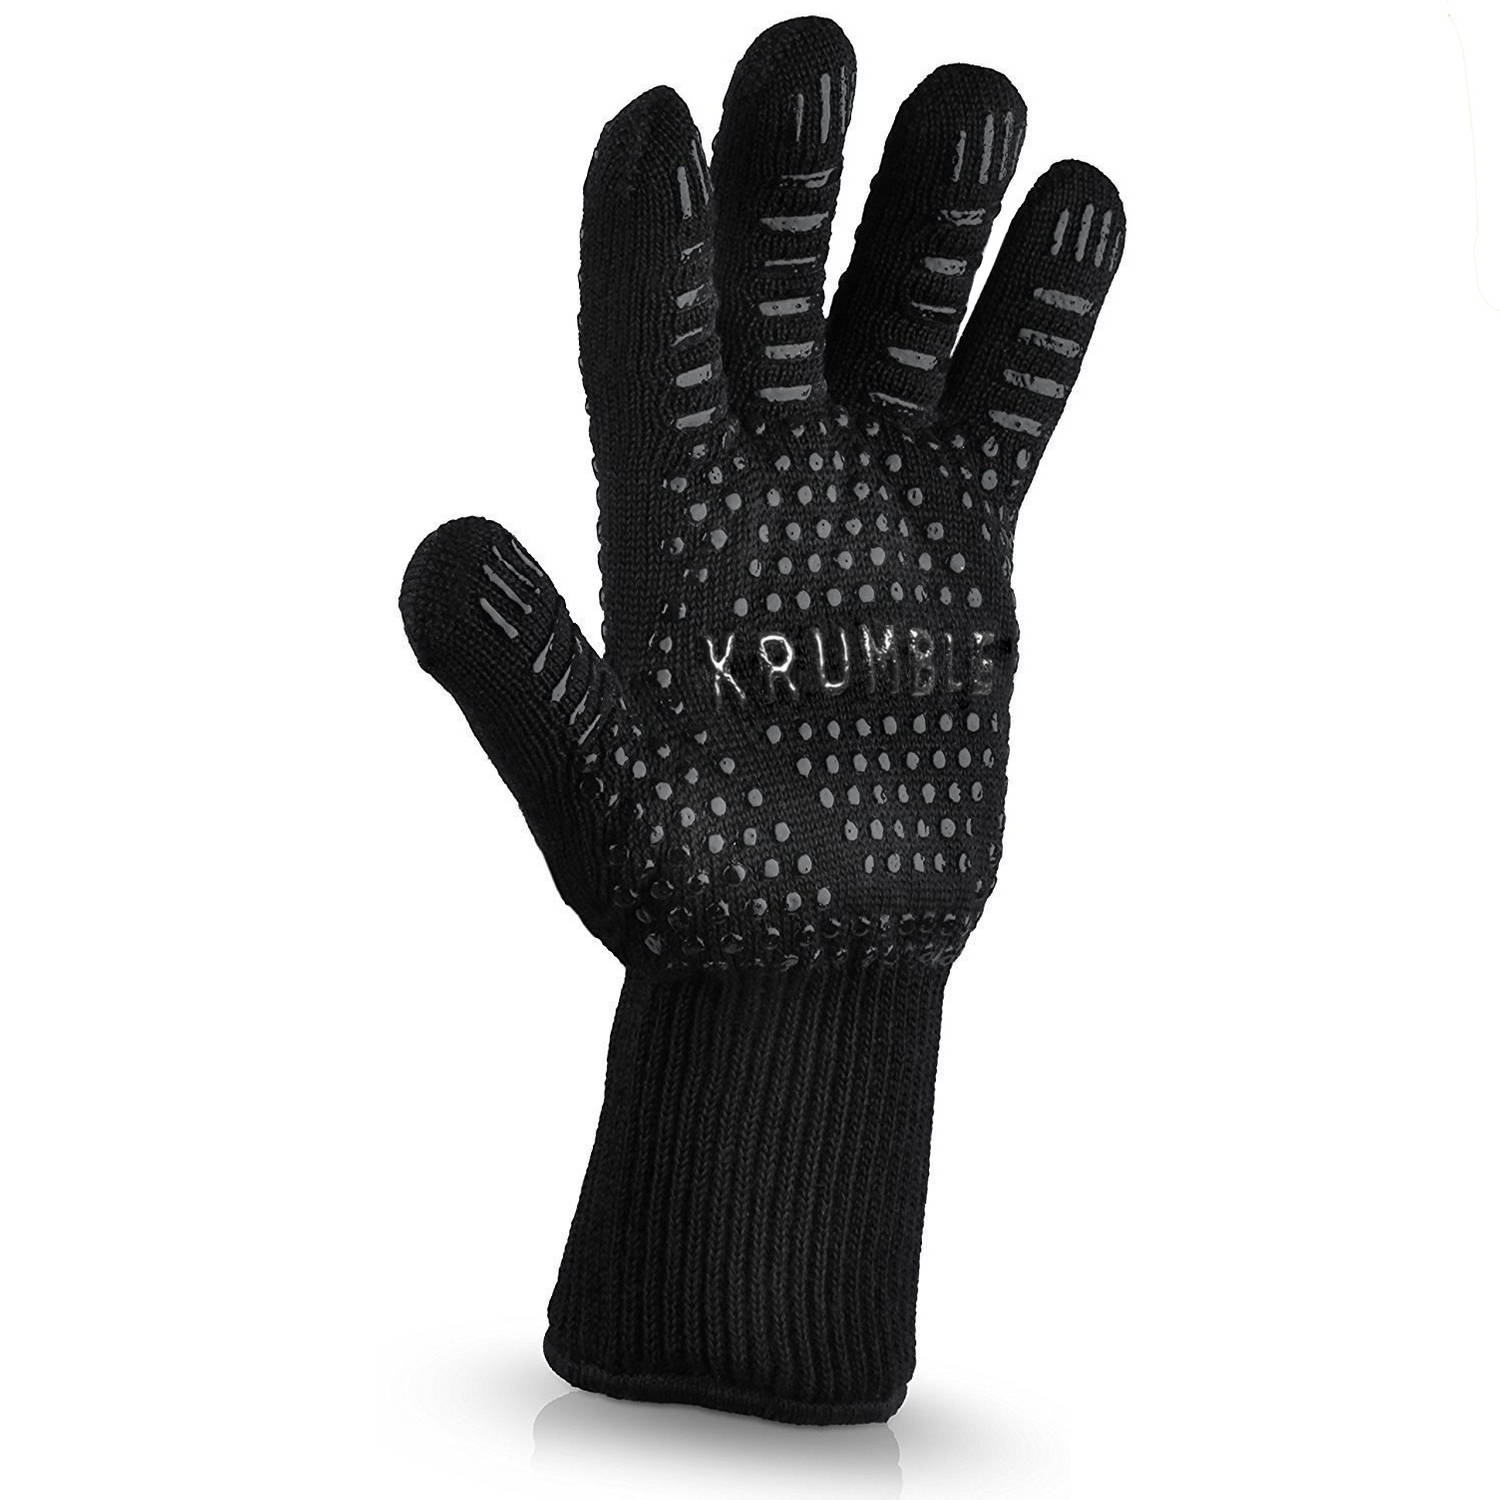 Hittebestendige Oven Handschoen Zwart